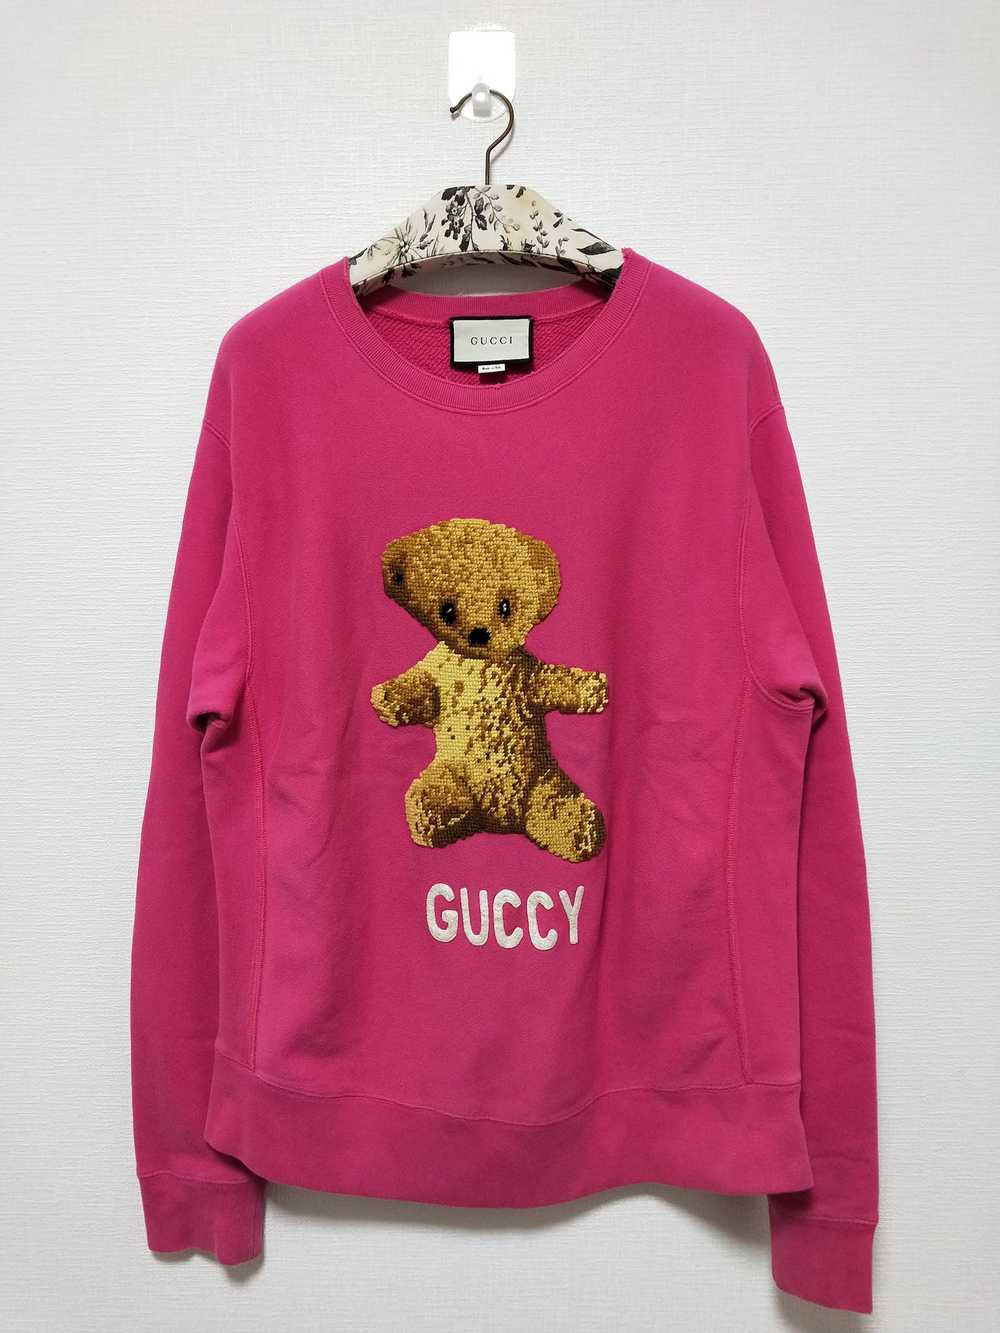 Gucci 'Guccy' Teddy Bear Sweatshirt - image 1